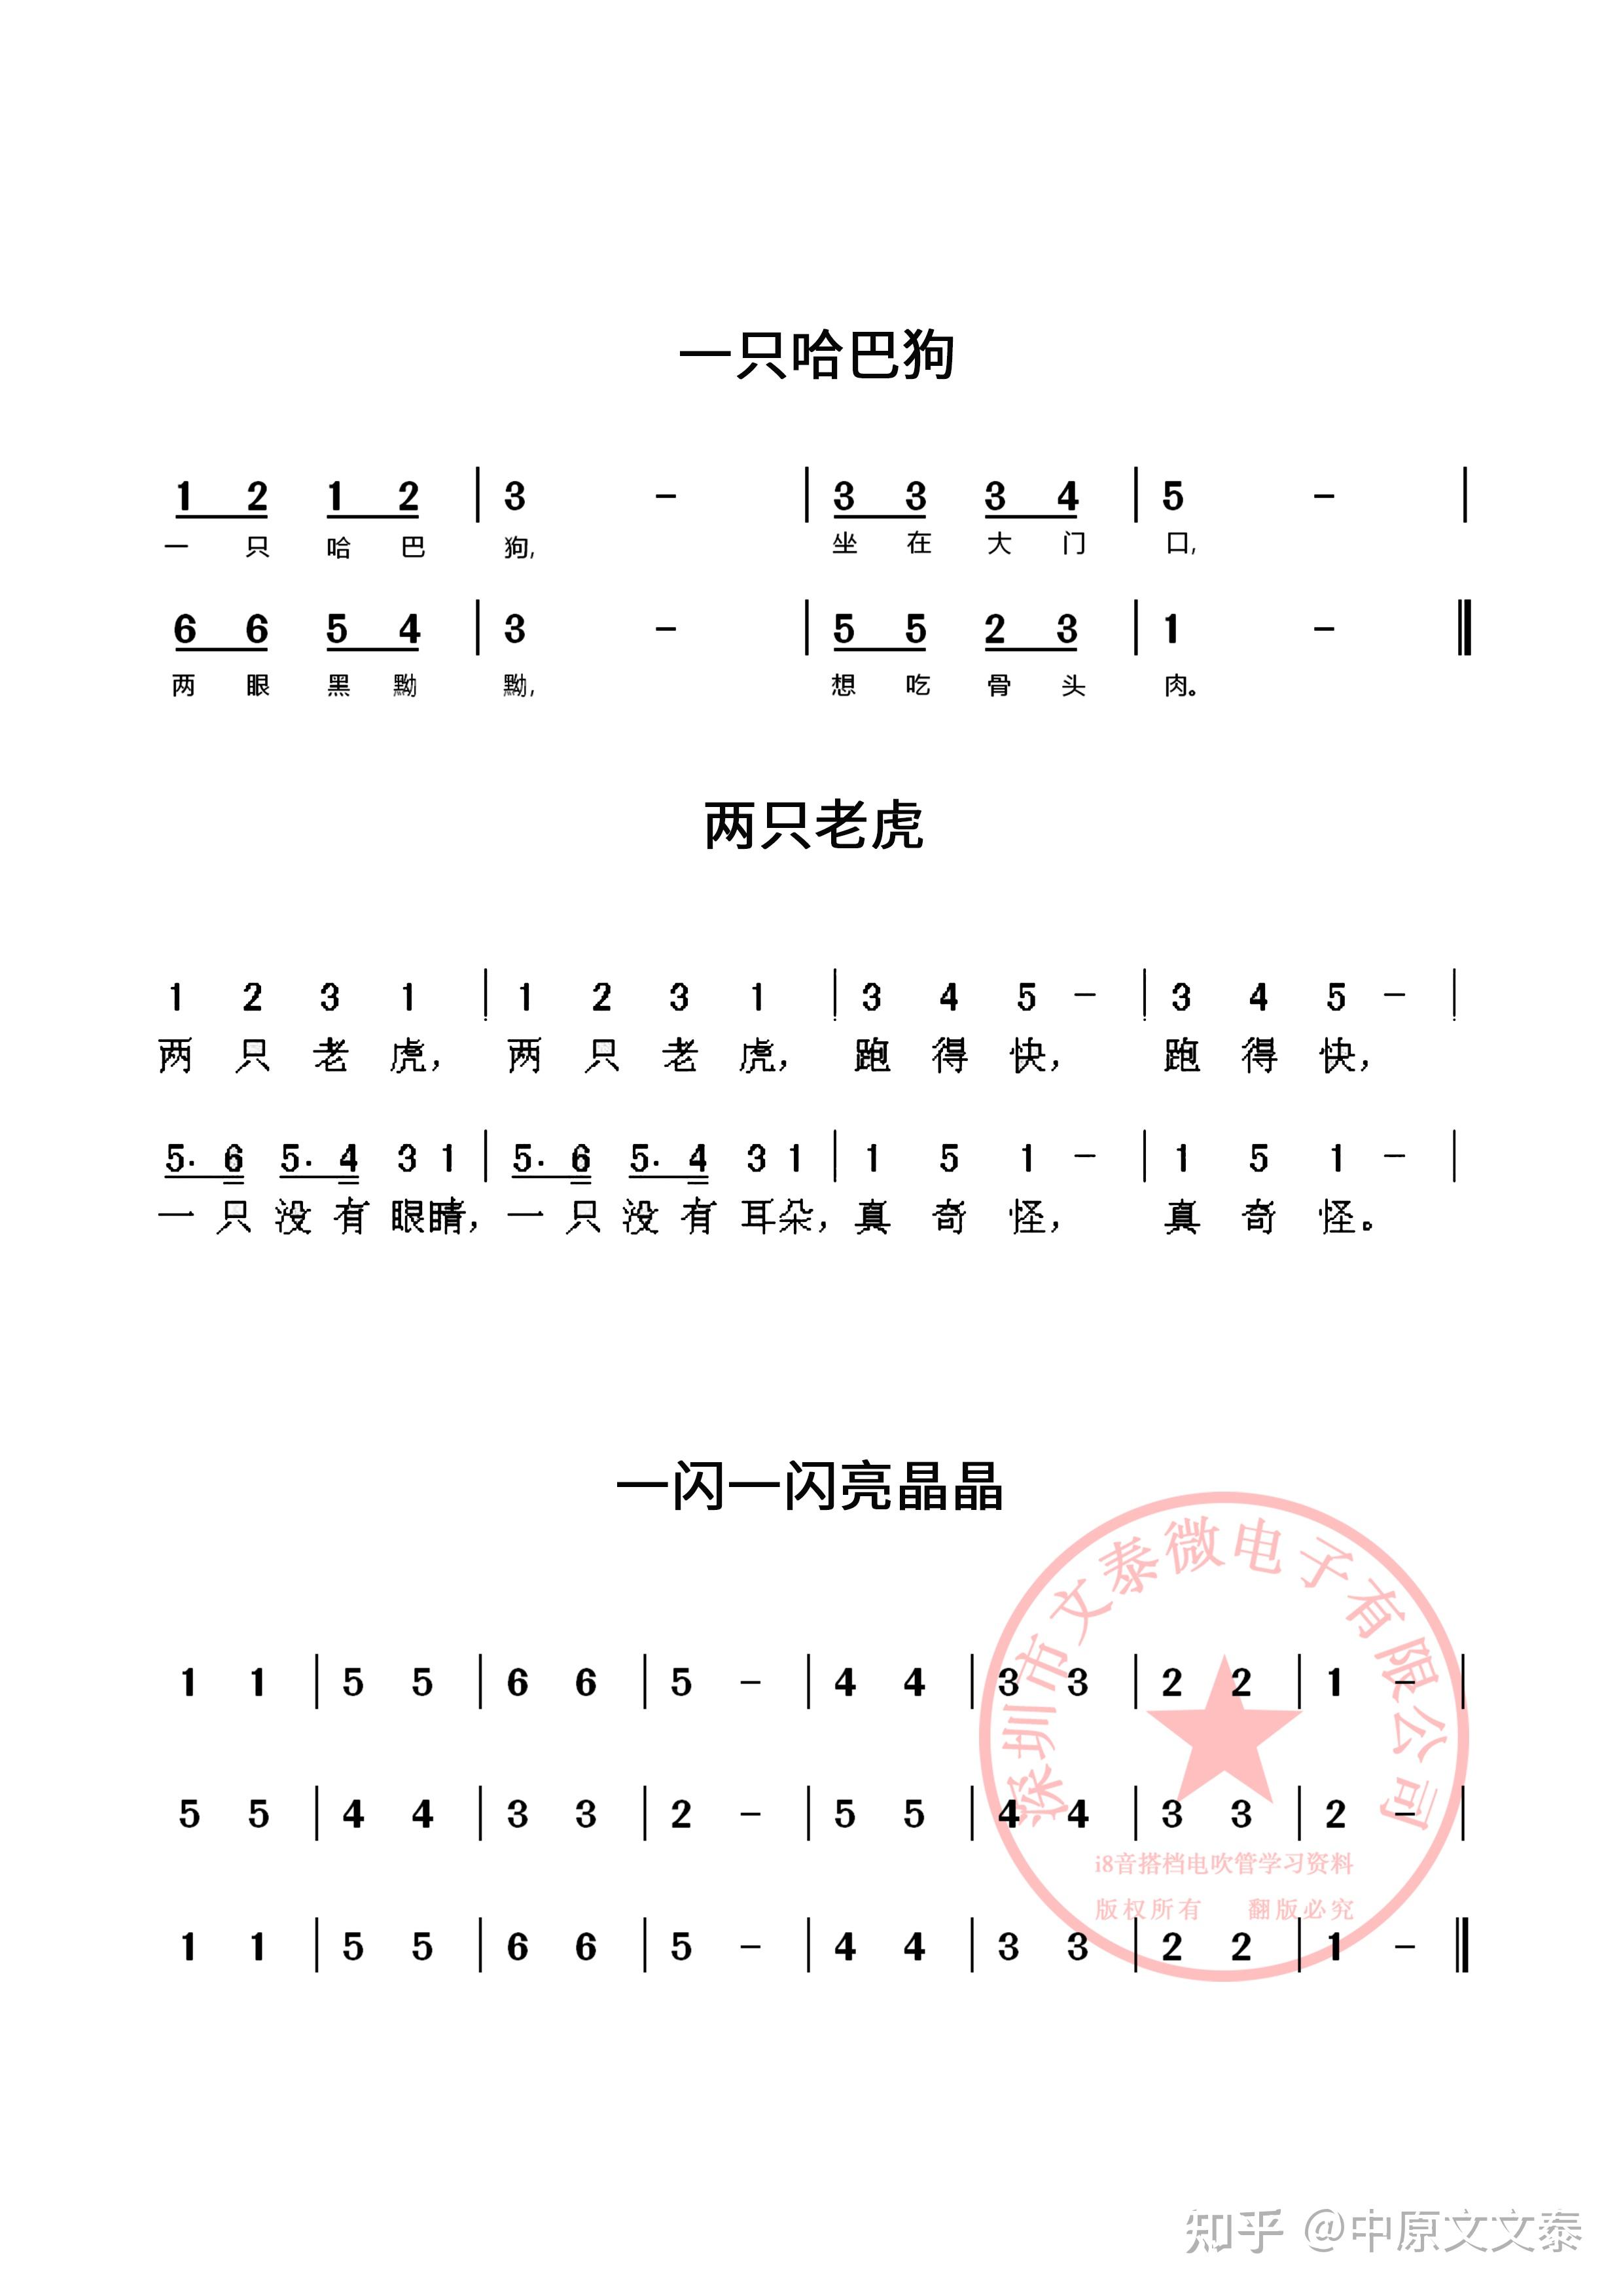 简谱是初学者学习乐器的速成辅助,用1234567代表音阶中的7个基本级